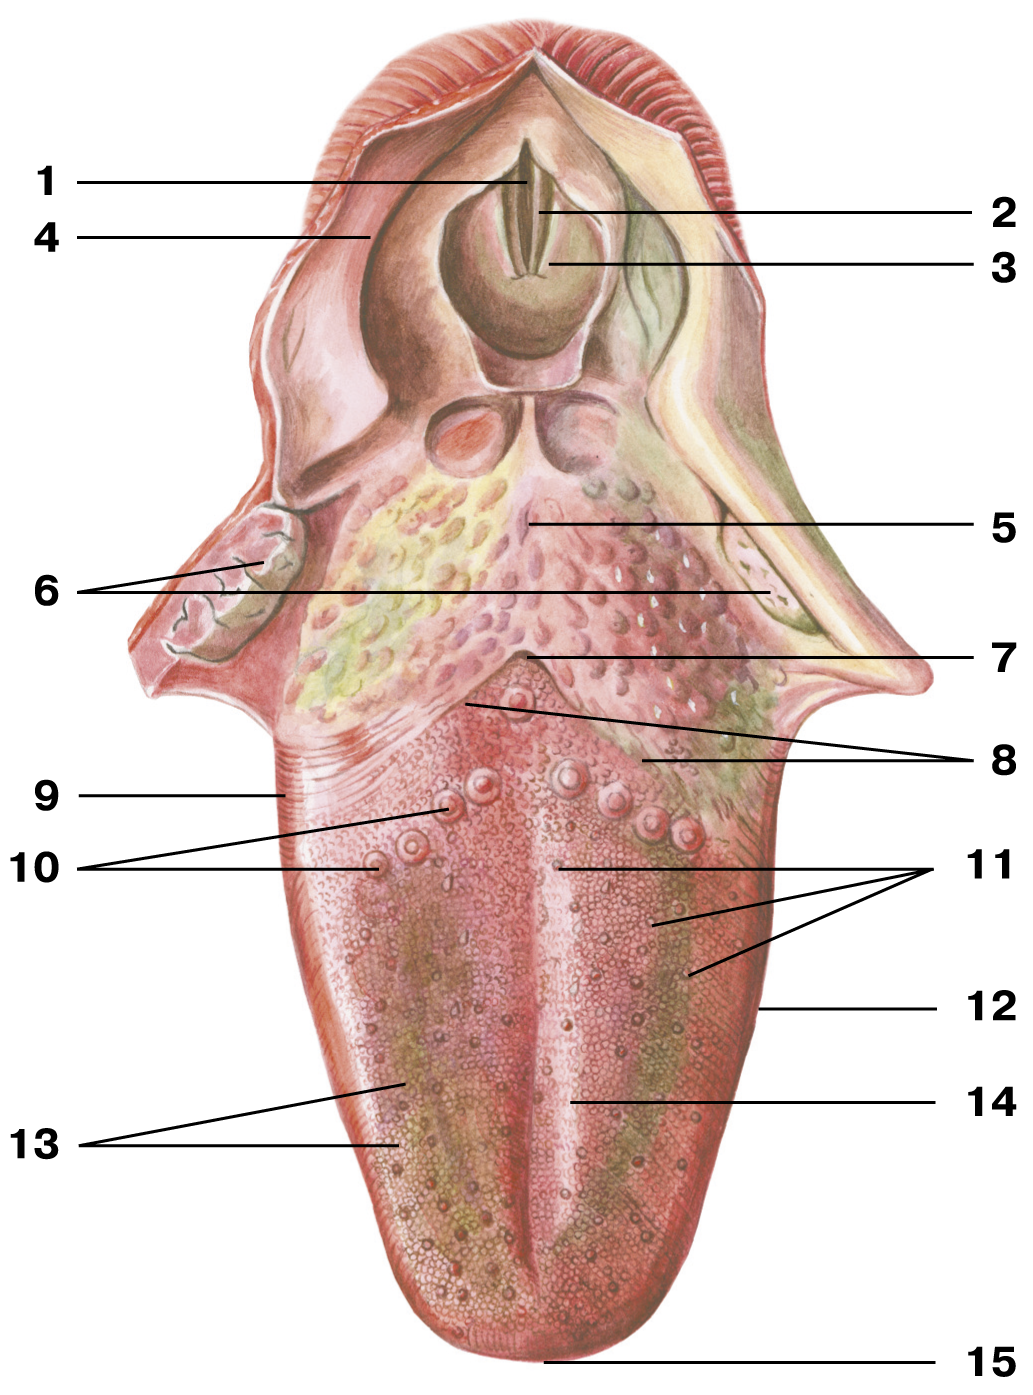 Образования ротовой полости. Желобовидные сосочки корня языка. Язычная миндалина анатомия. Грибовидные сосочки языка анатомия. Черпалонадгортанная складка анатомия.